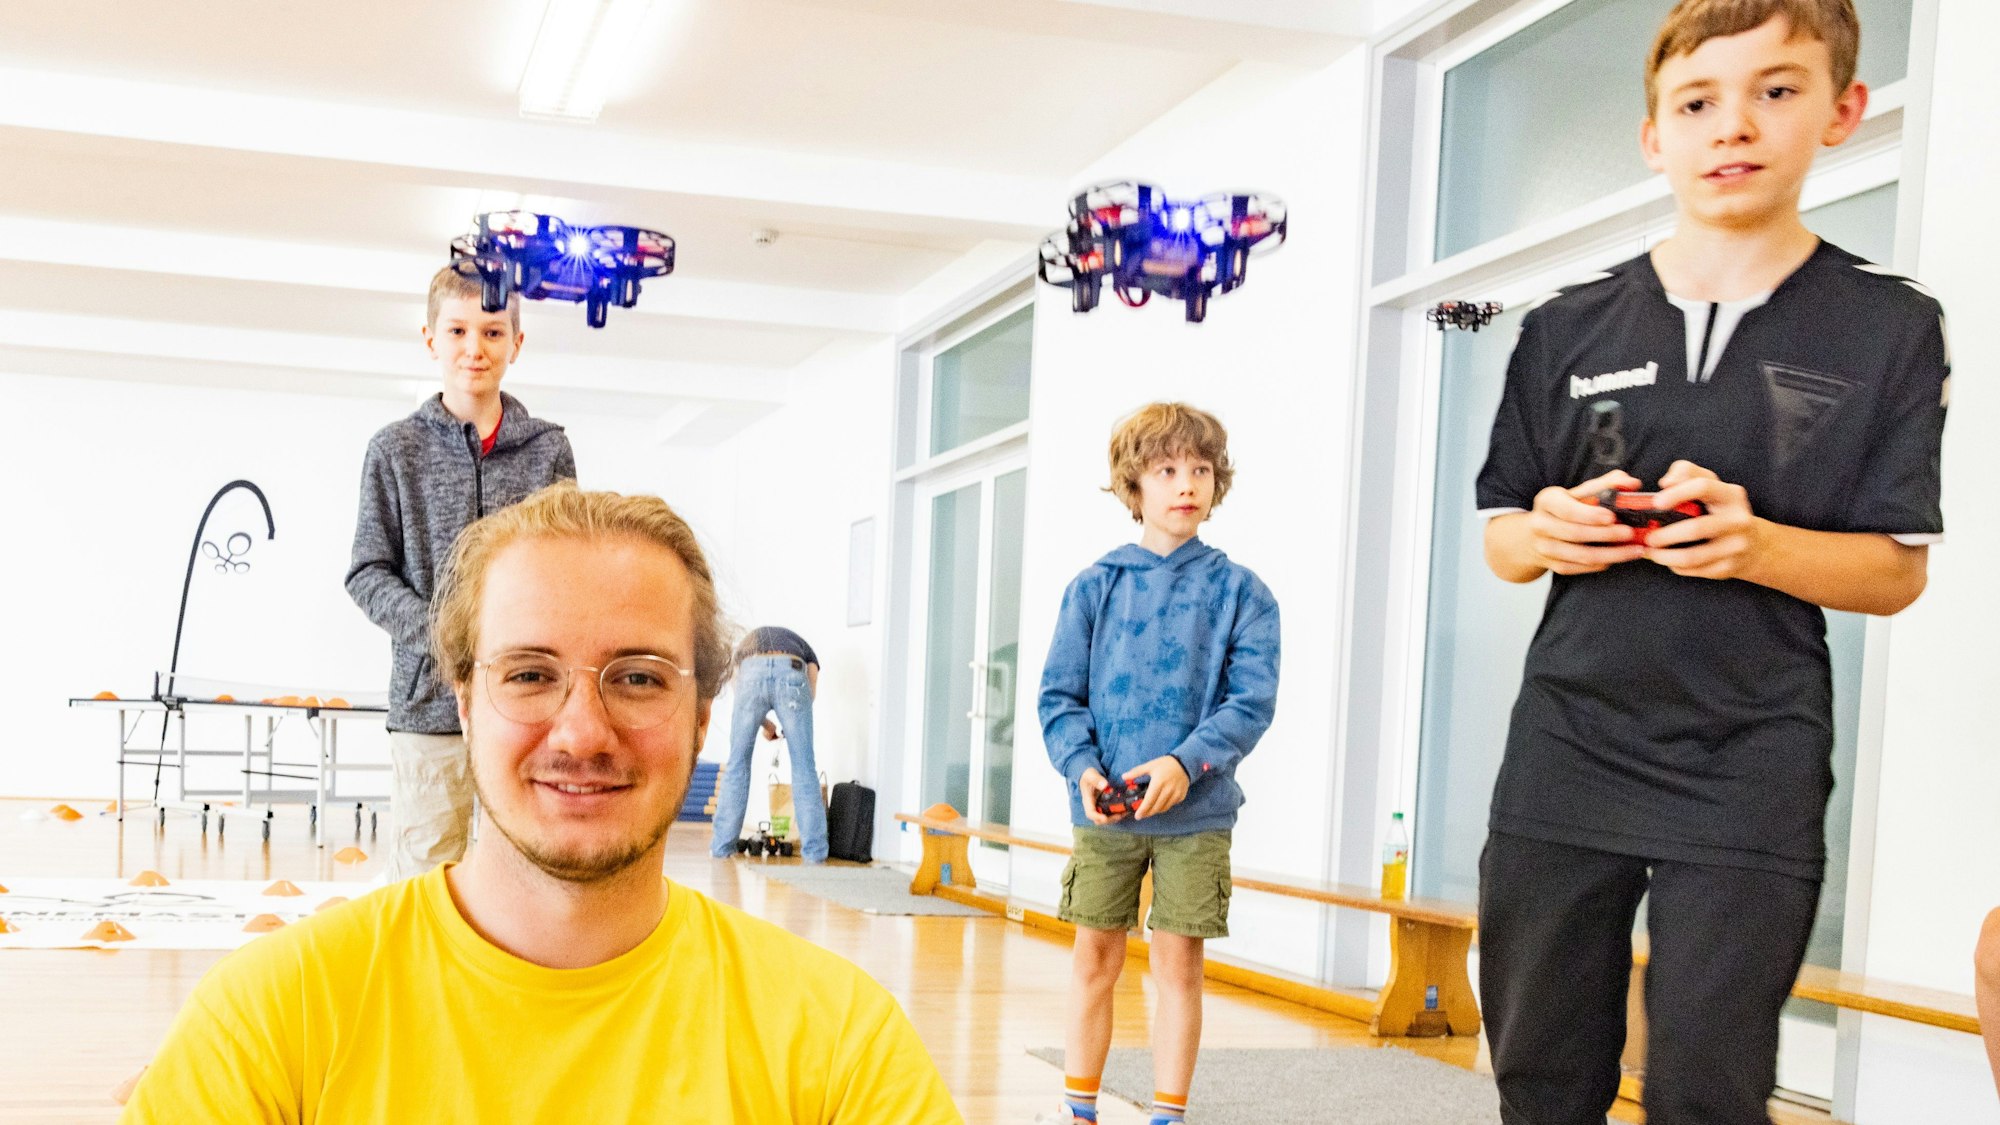 Leiter Viktor Lambert ist genauso fasziniert von Drohnen, wie seine Kursteilnehmer.